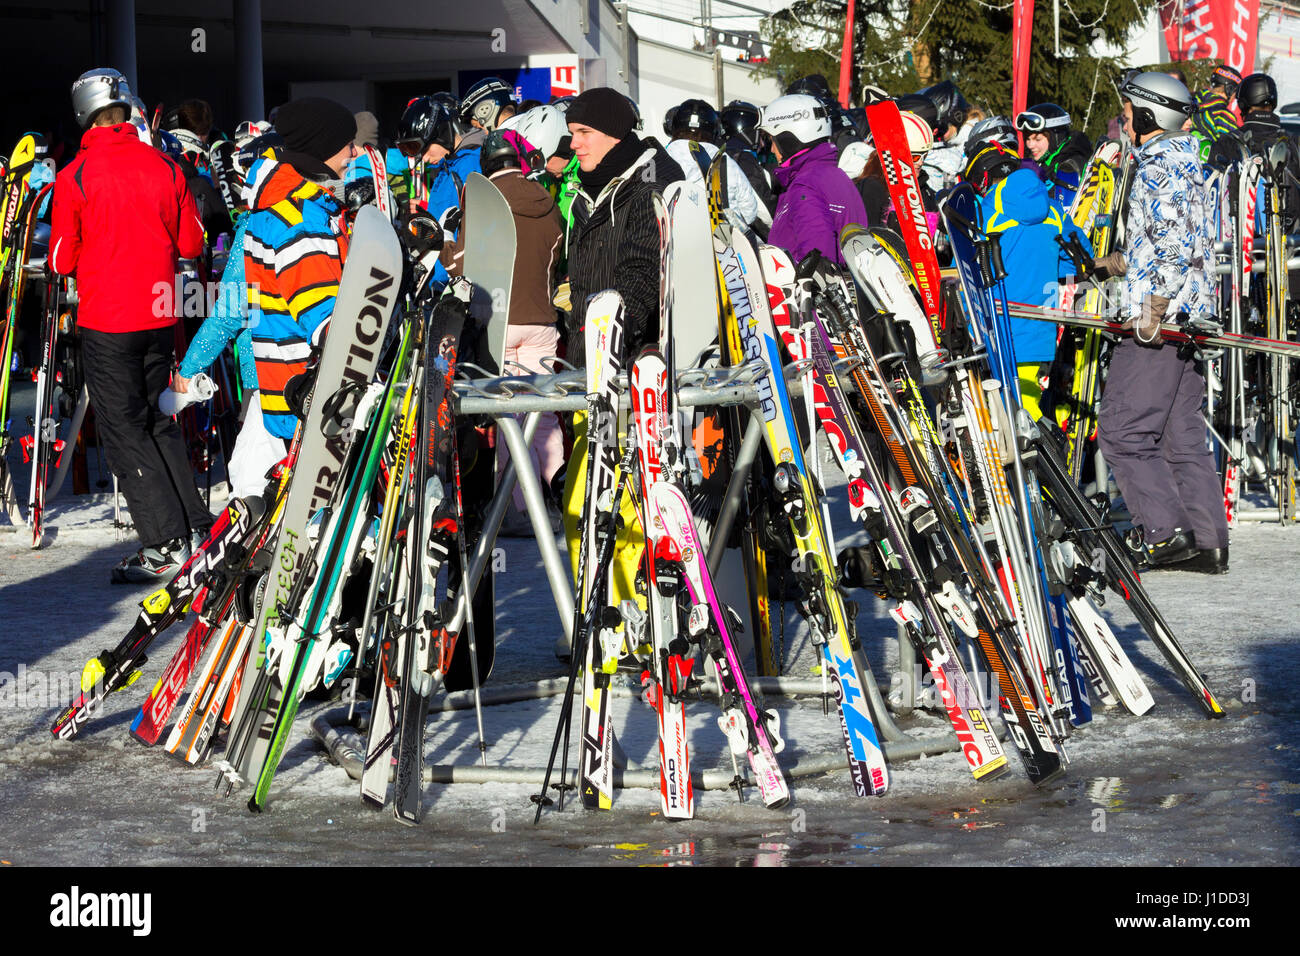 FLACHAU, AUSTRIA - DEC 29, 2012: People at the ski pistes in the ski resort town of Flachau in the Austrian Alps. These pistes are part of the Ski Arm Stock Photo